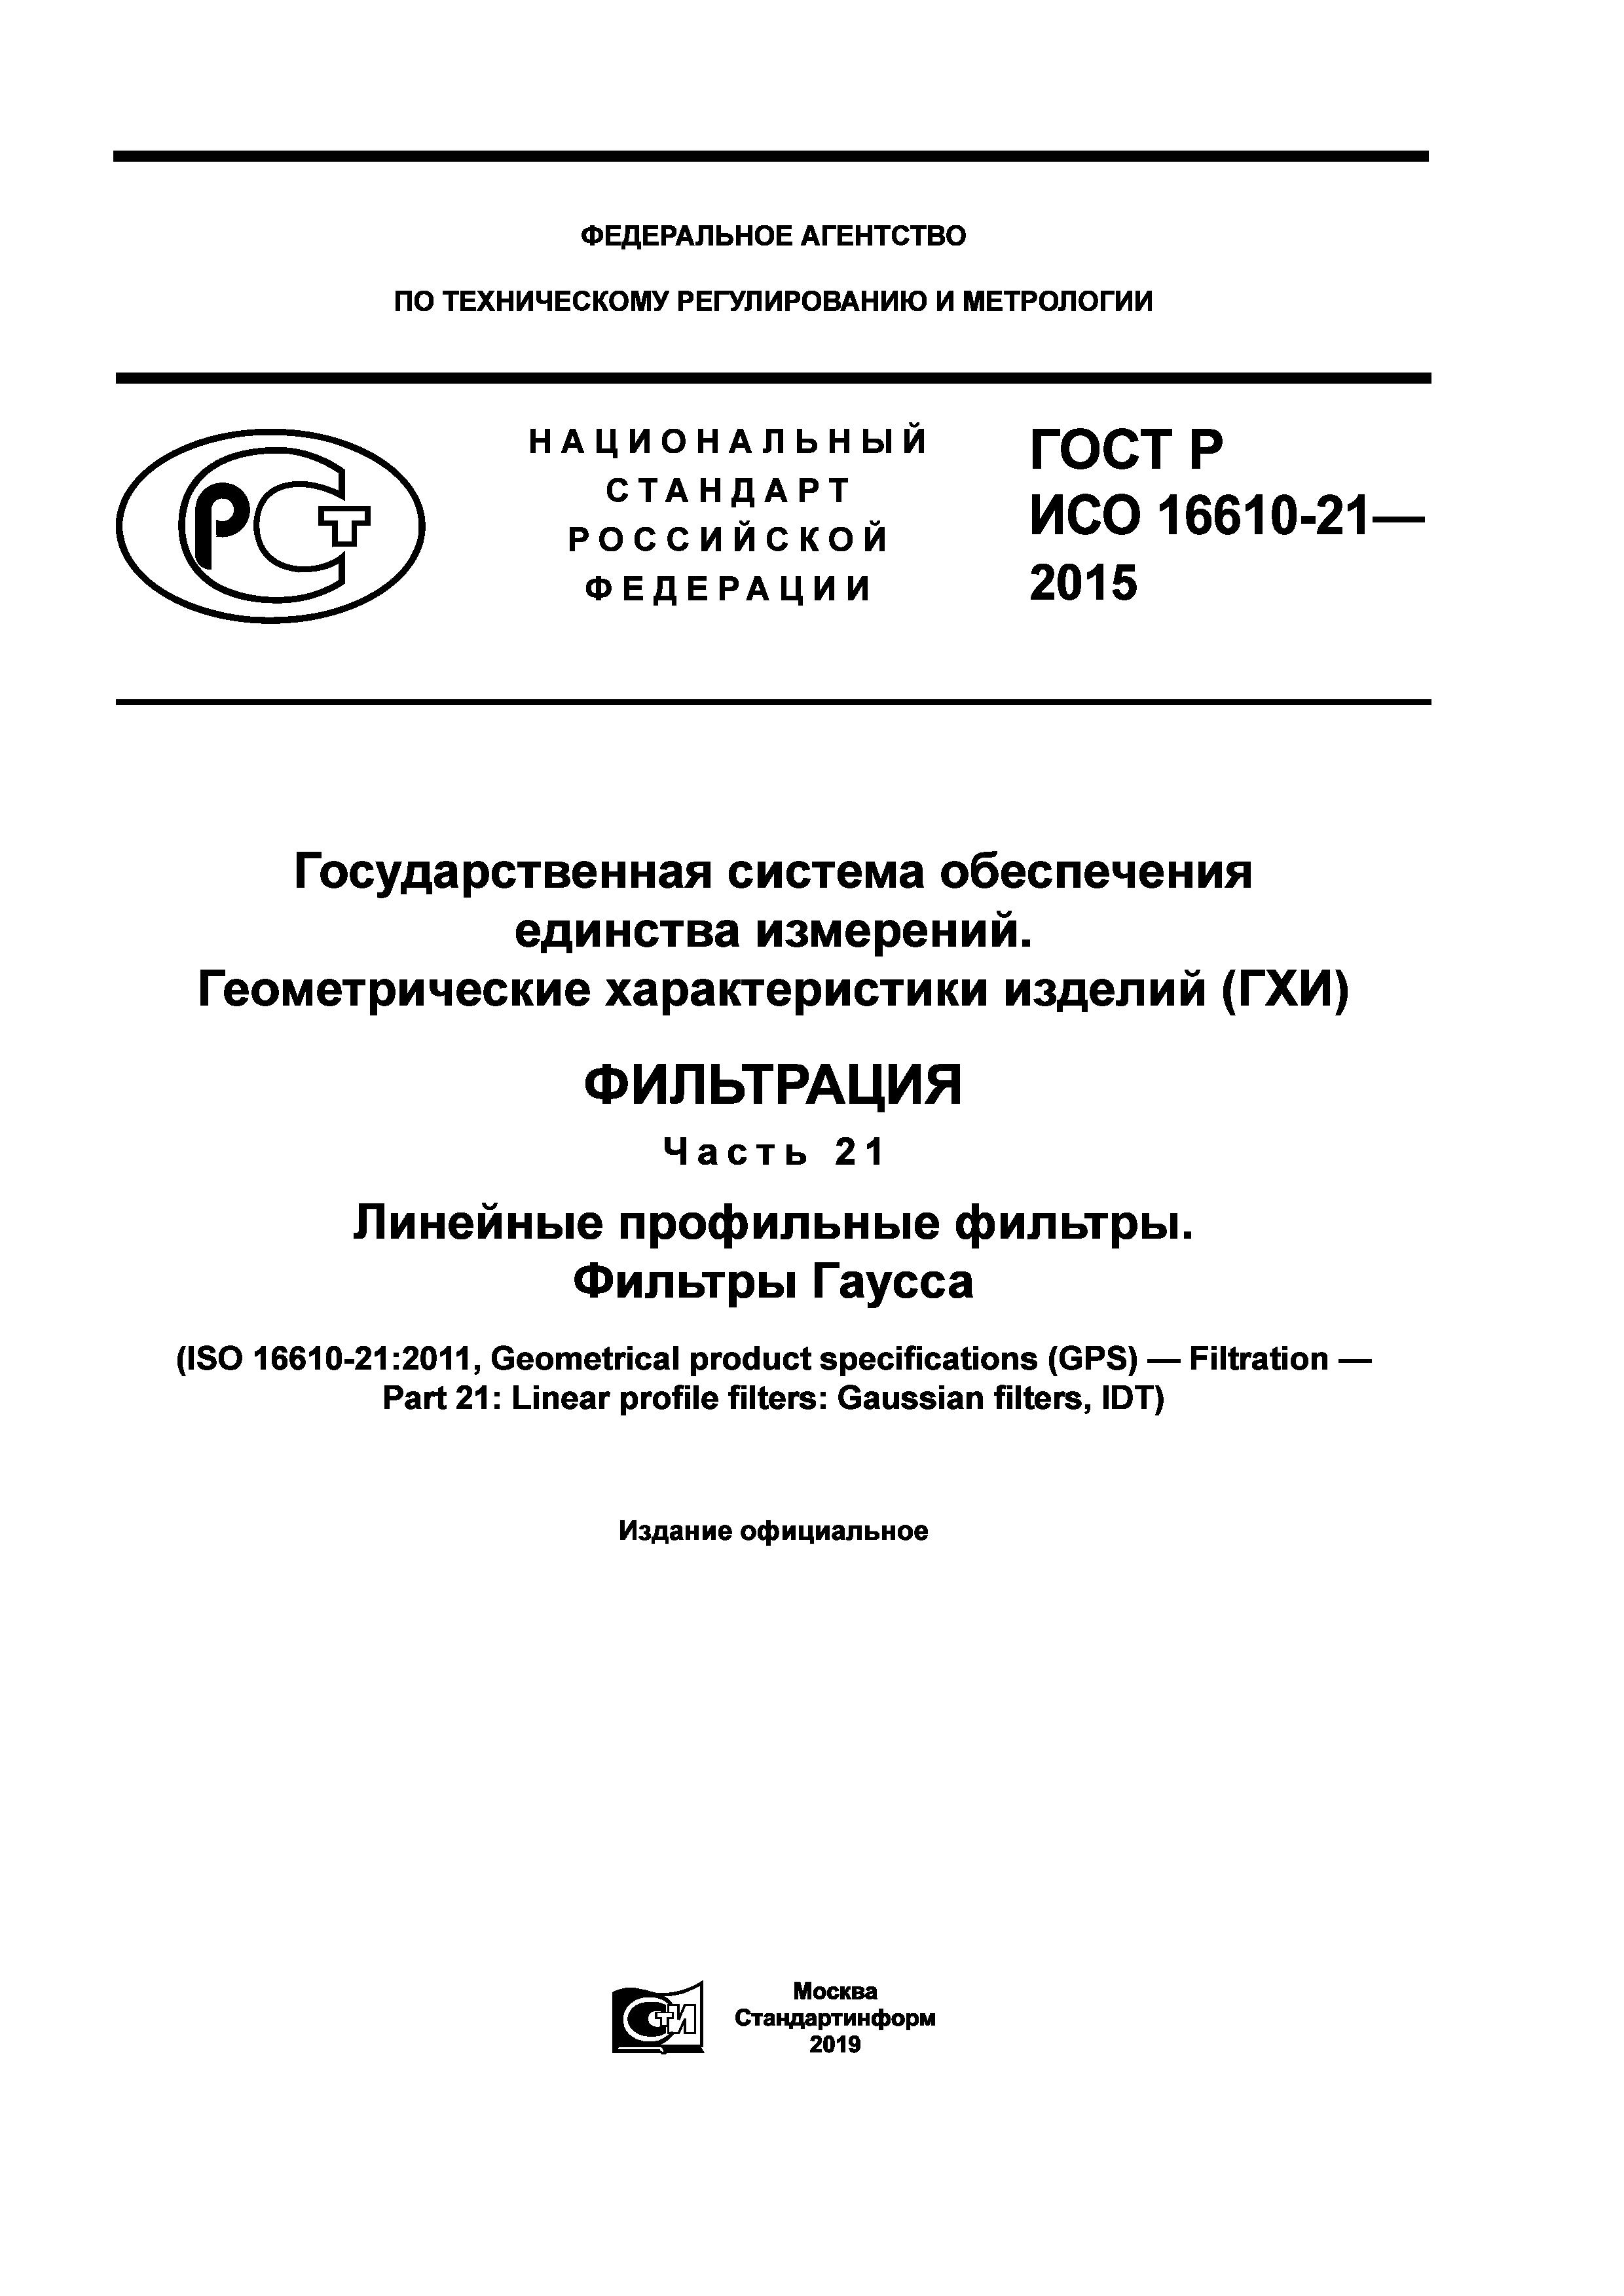 ГОСТ Р ИСО 16610-21-2015